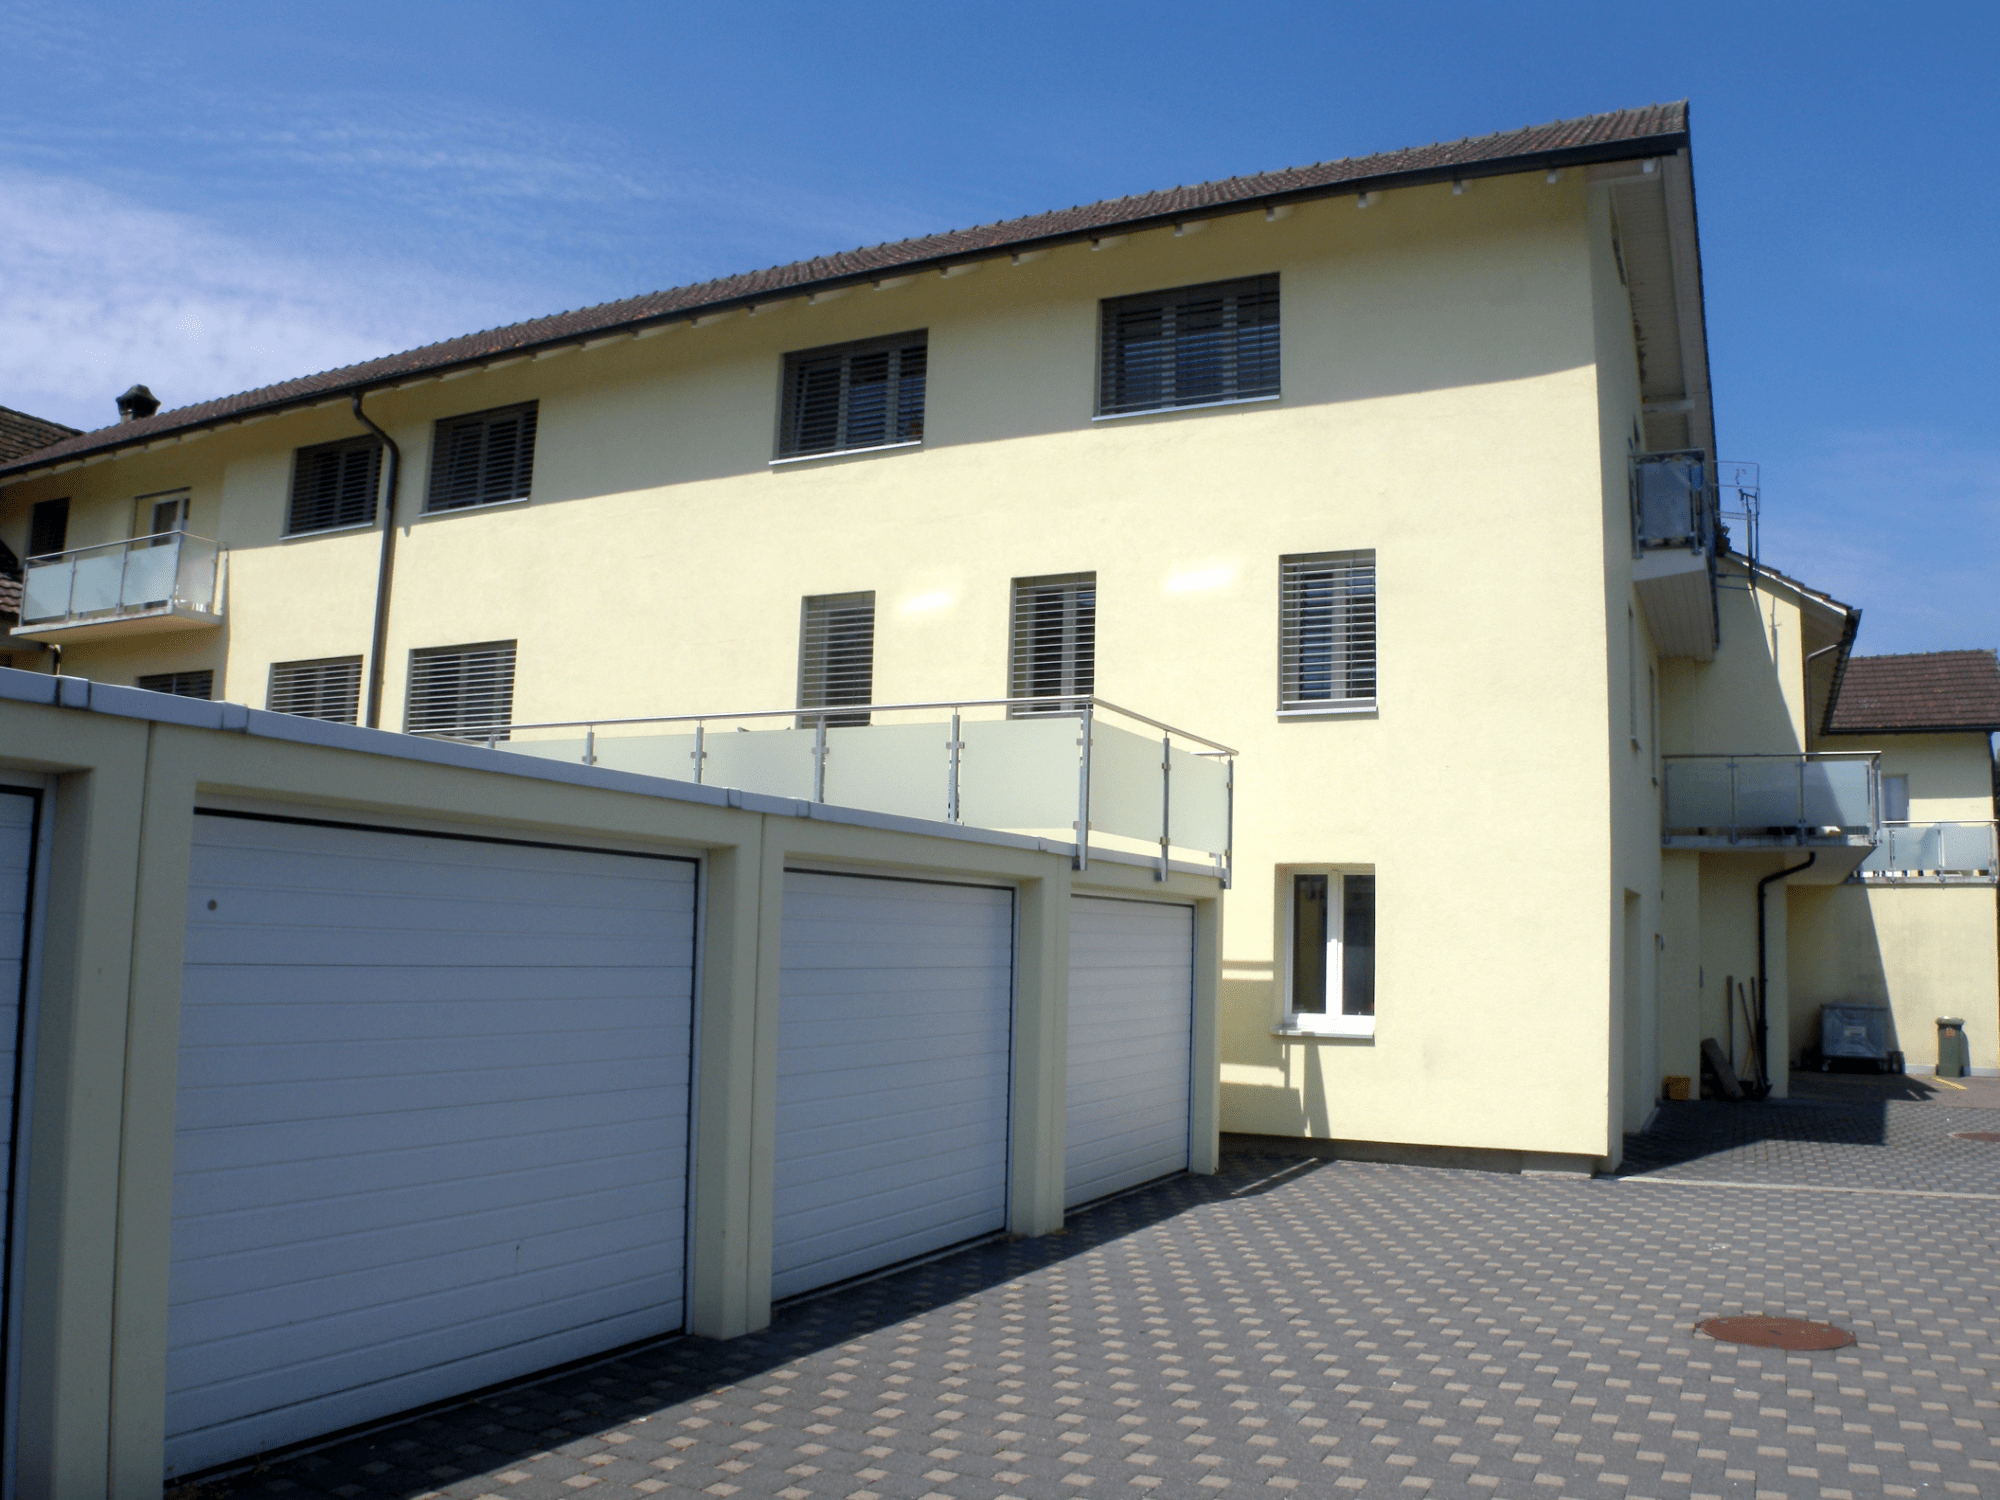 Mehrfamilienhaus in Schöftland